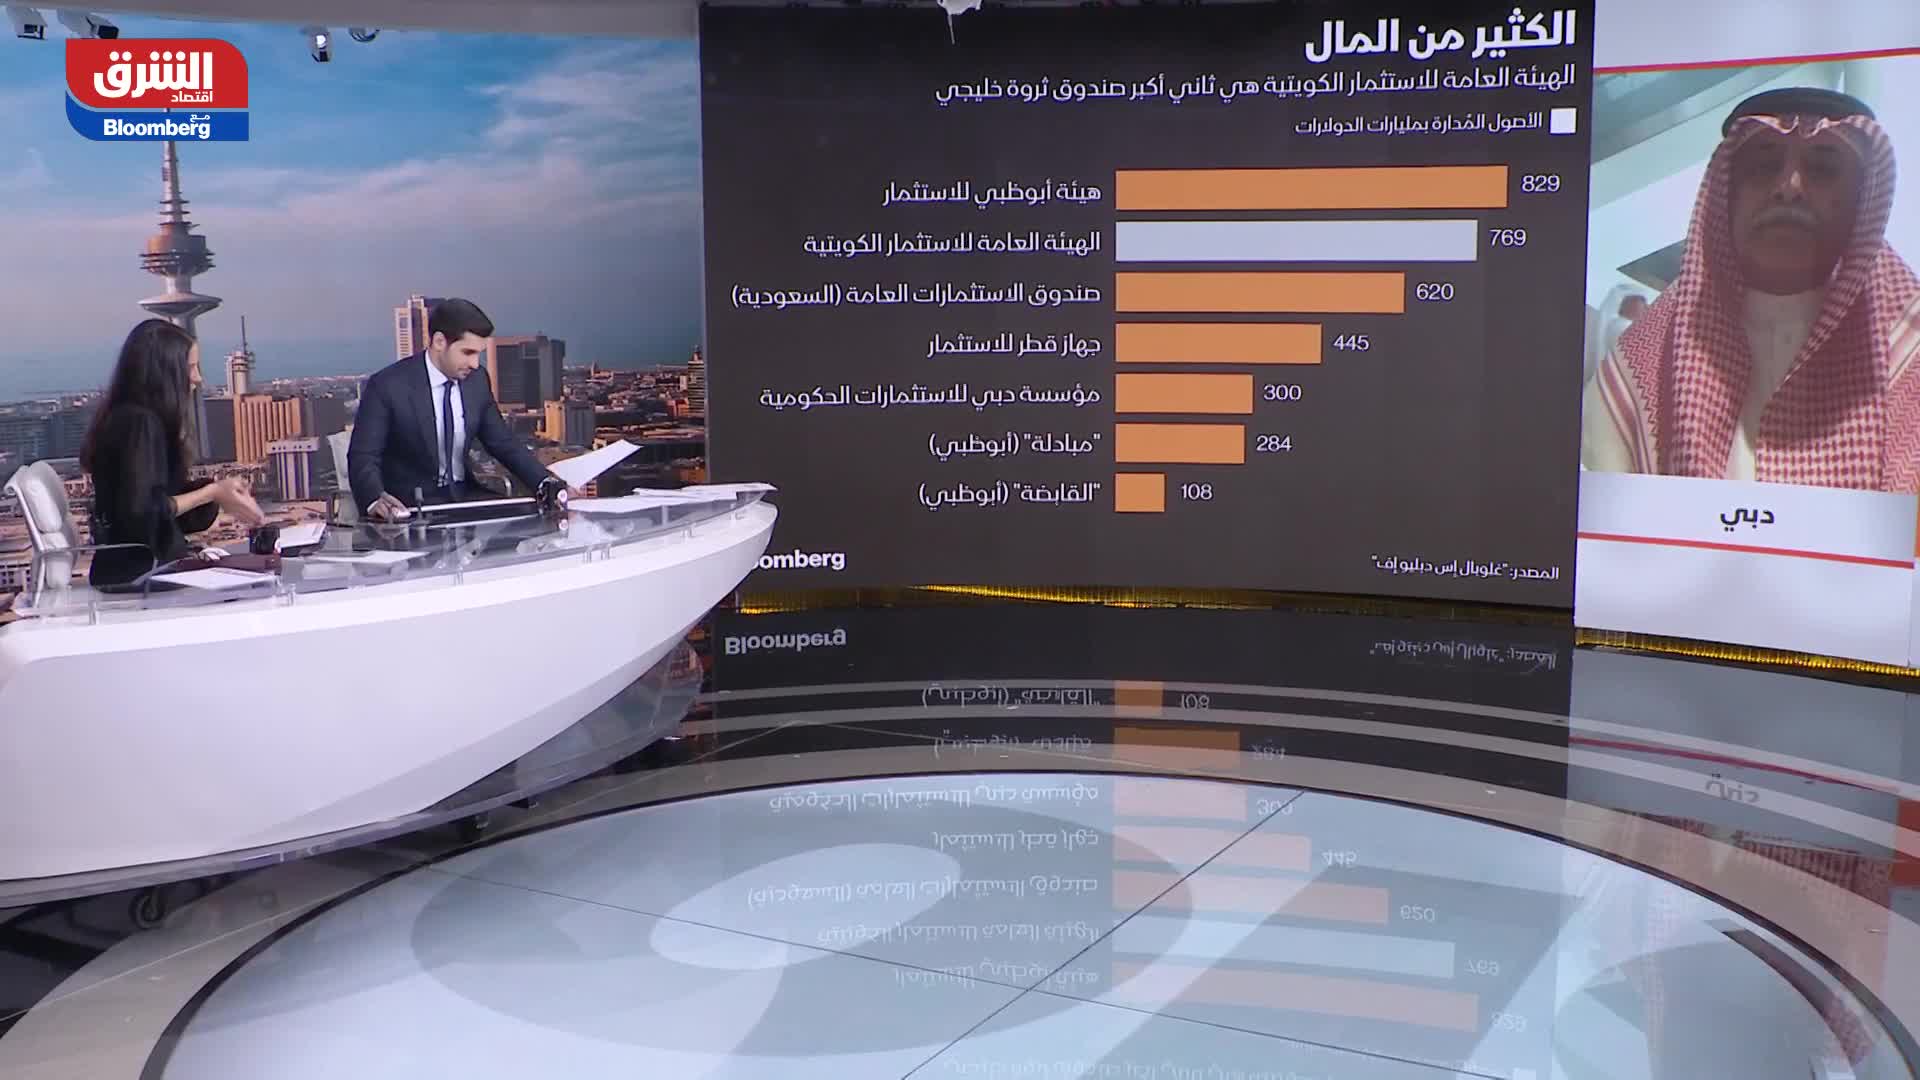 ناصر المصري: الكويت قدرتها المادية هائلة ولا عذر لها في تدهور اقتصادها